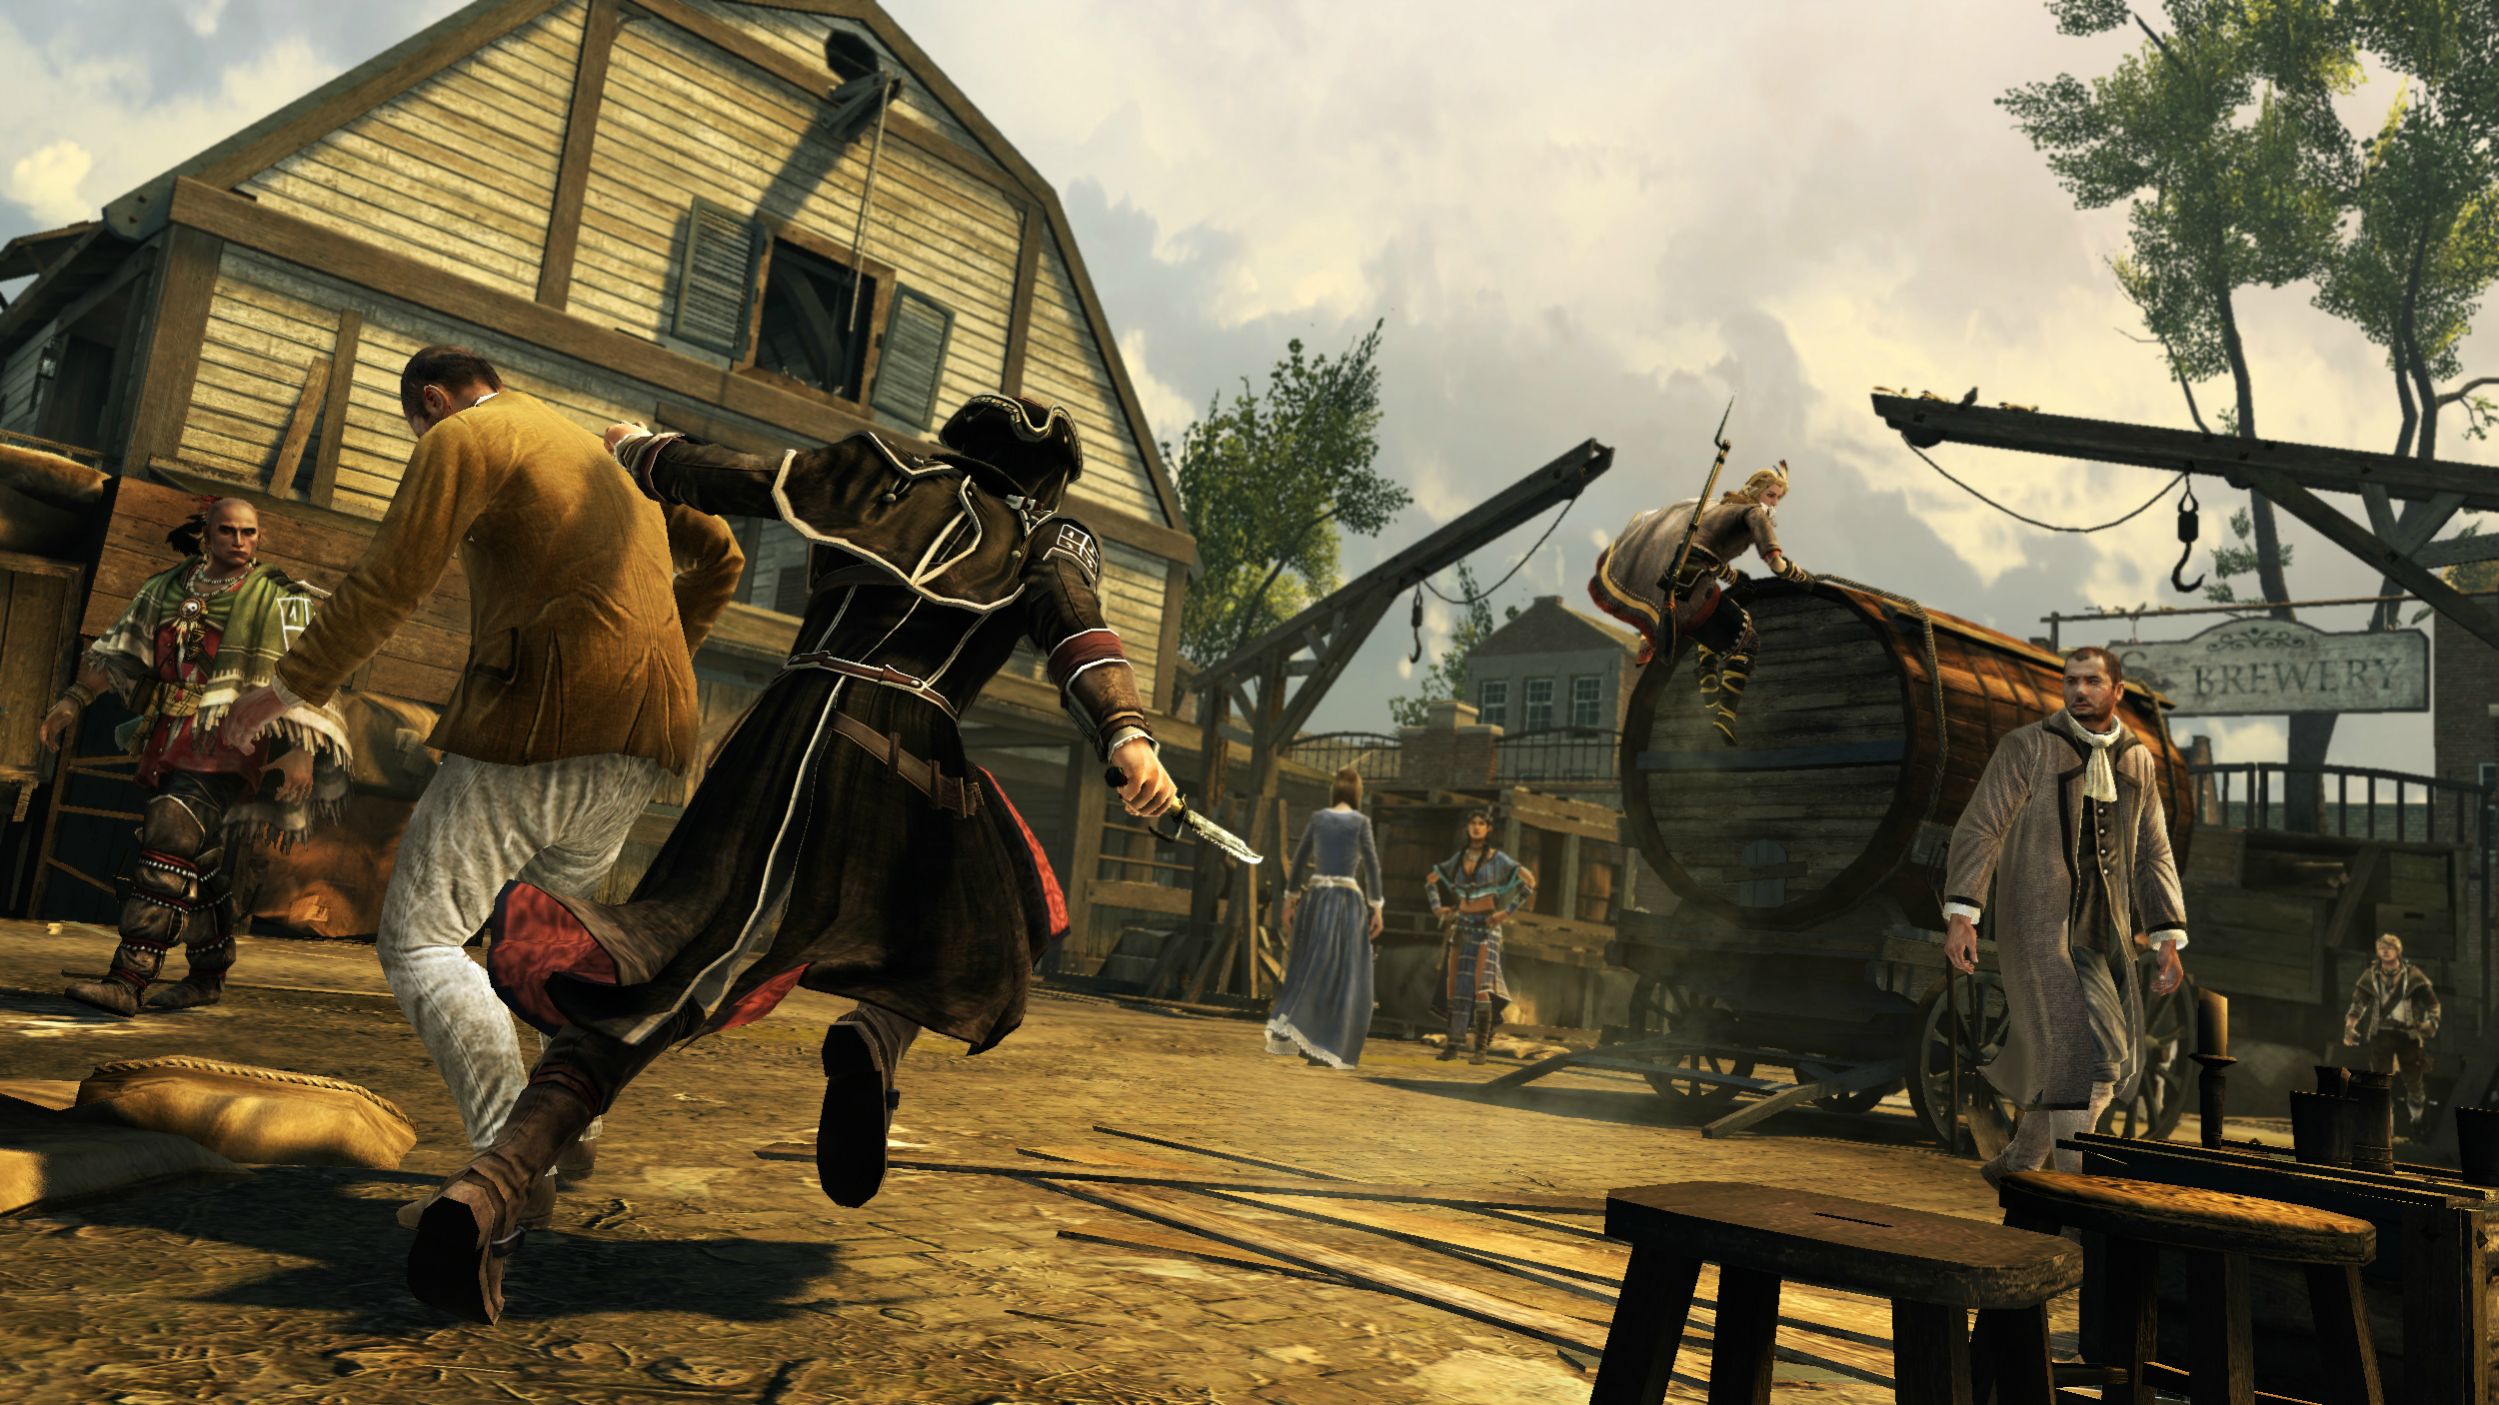 Ютуб 3 игра. Ассасин Крид 3. Assassin's Creed 3 мультиплеер. Assassin's Creed 3 screenshots. Скриншоты игры ассасин Крид 3.